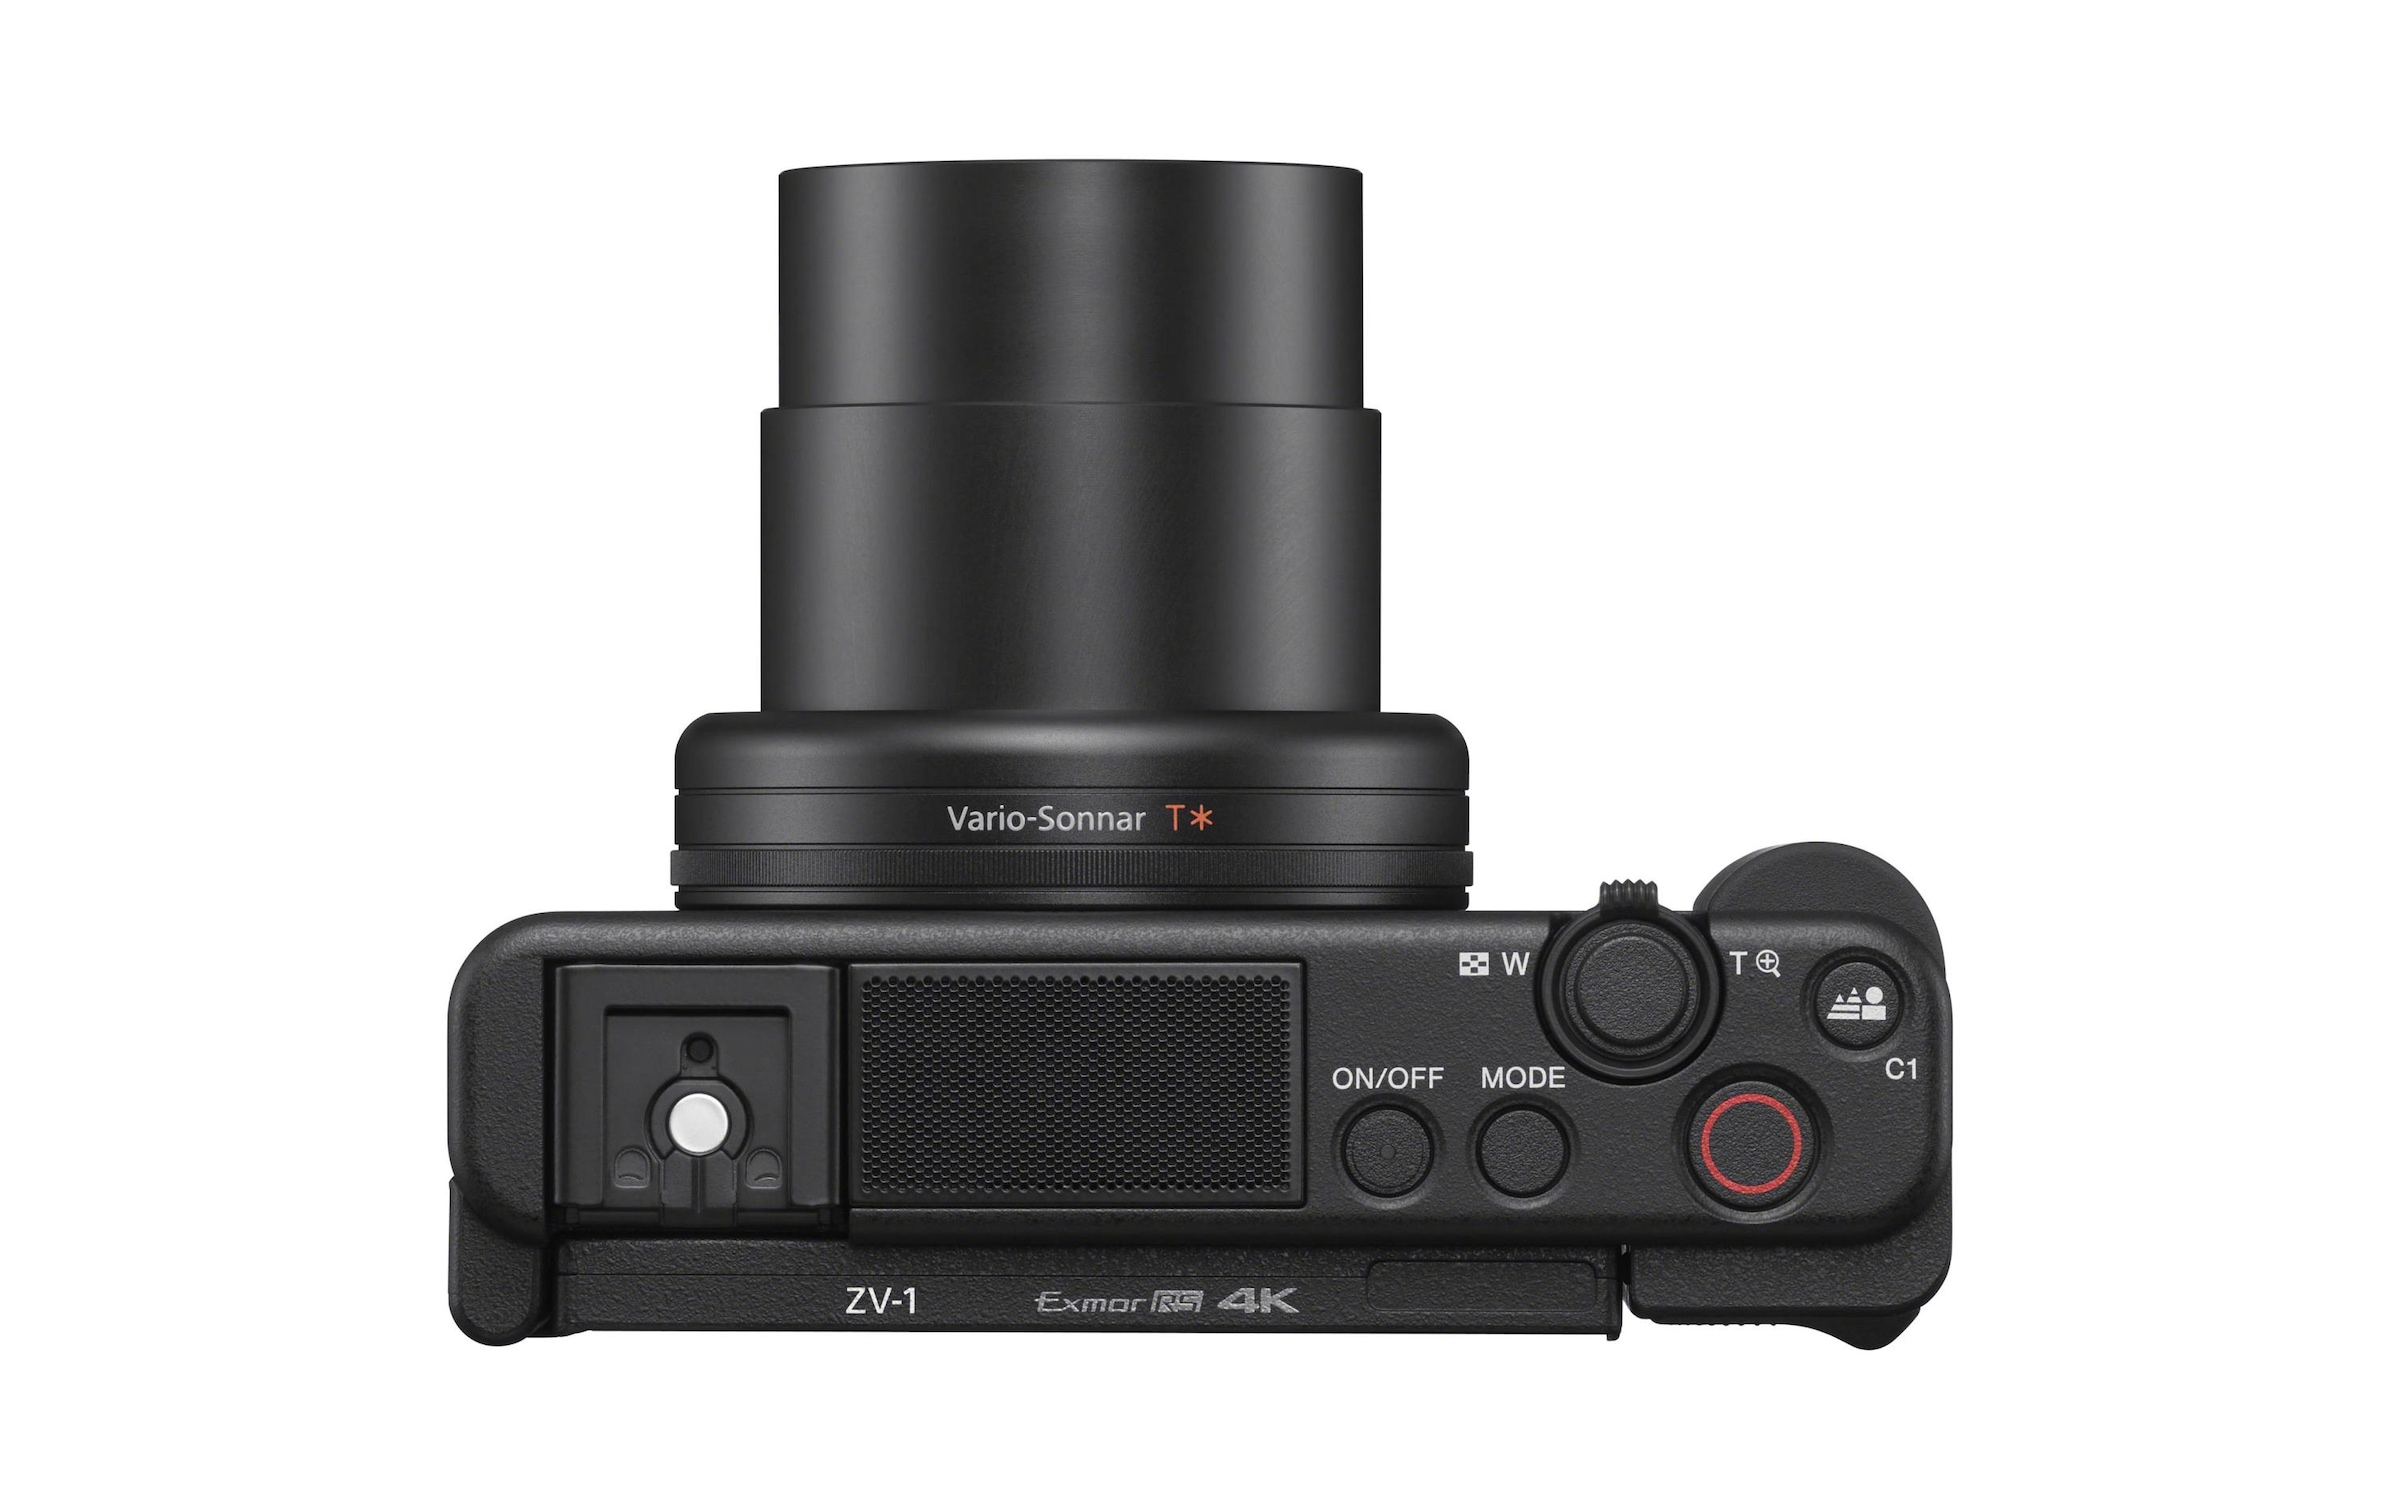 Sony Kompaktkamera »ZV-1 + Griff«